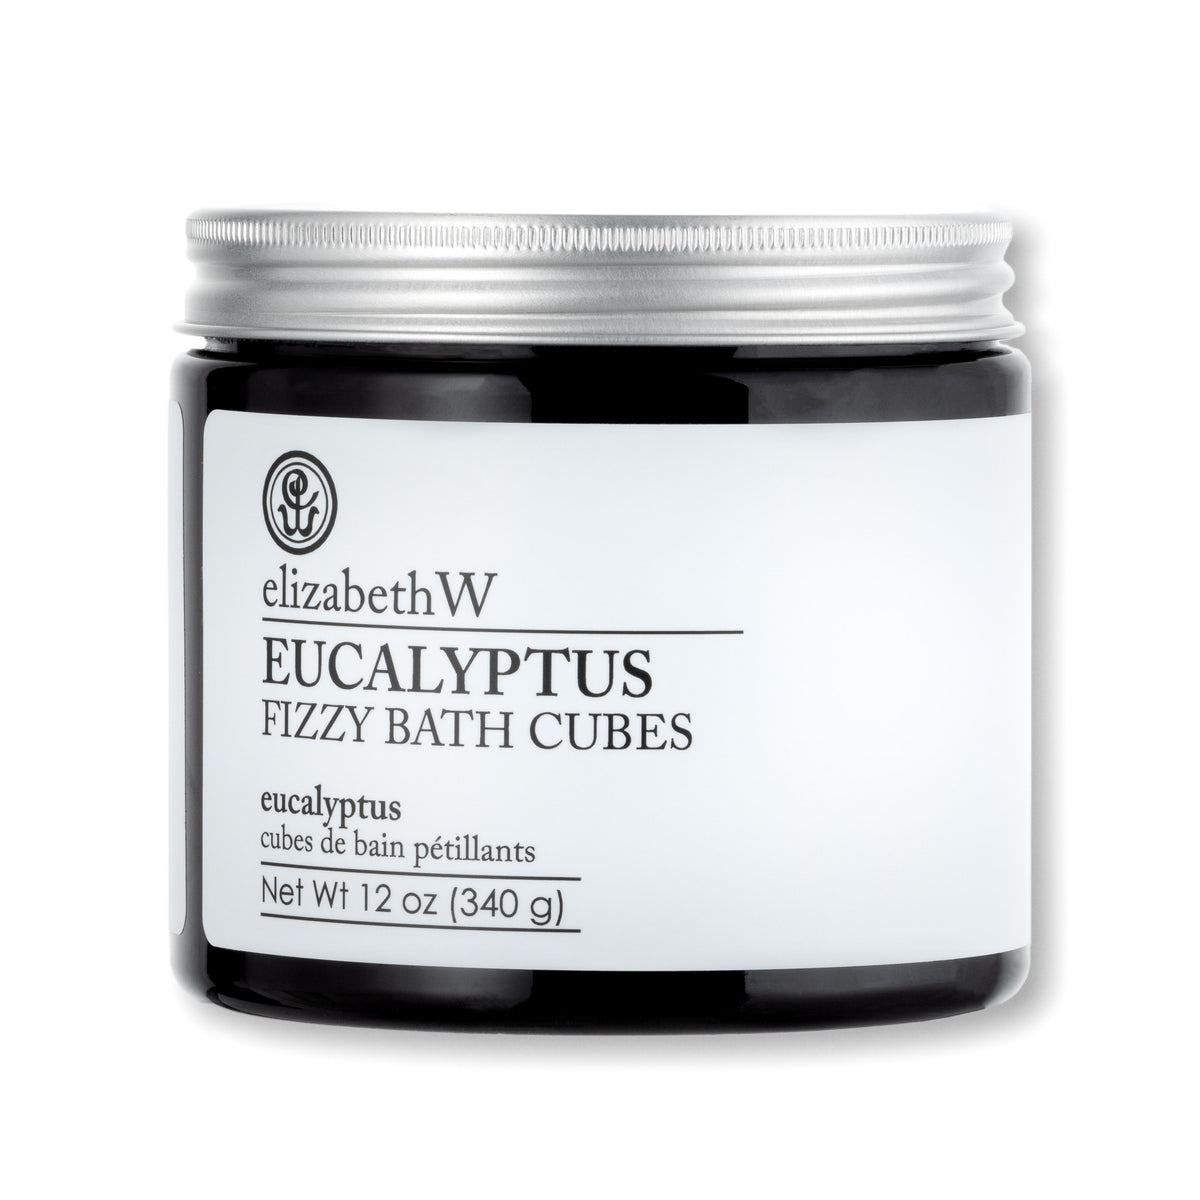 Eucalyptus Fizzy Bath Cubes